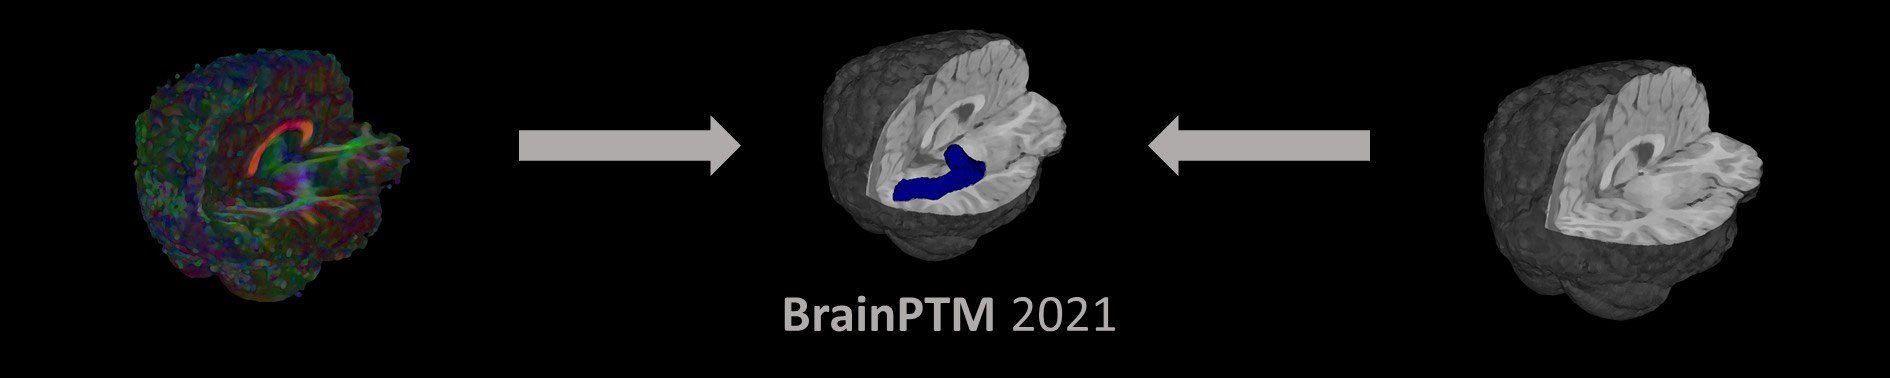 BrainPTM 2021 Banner